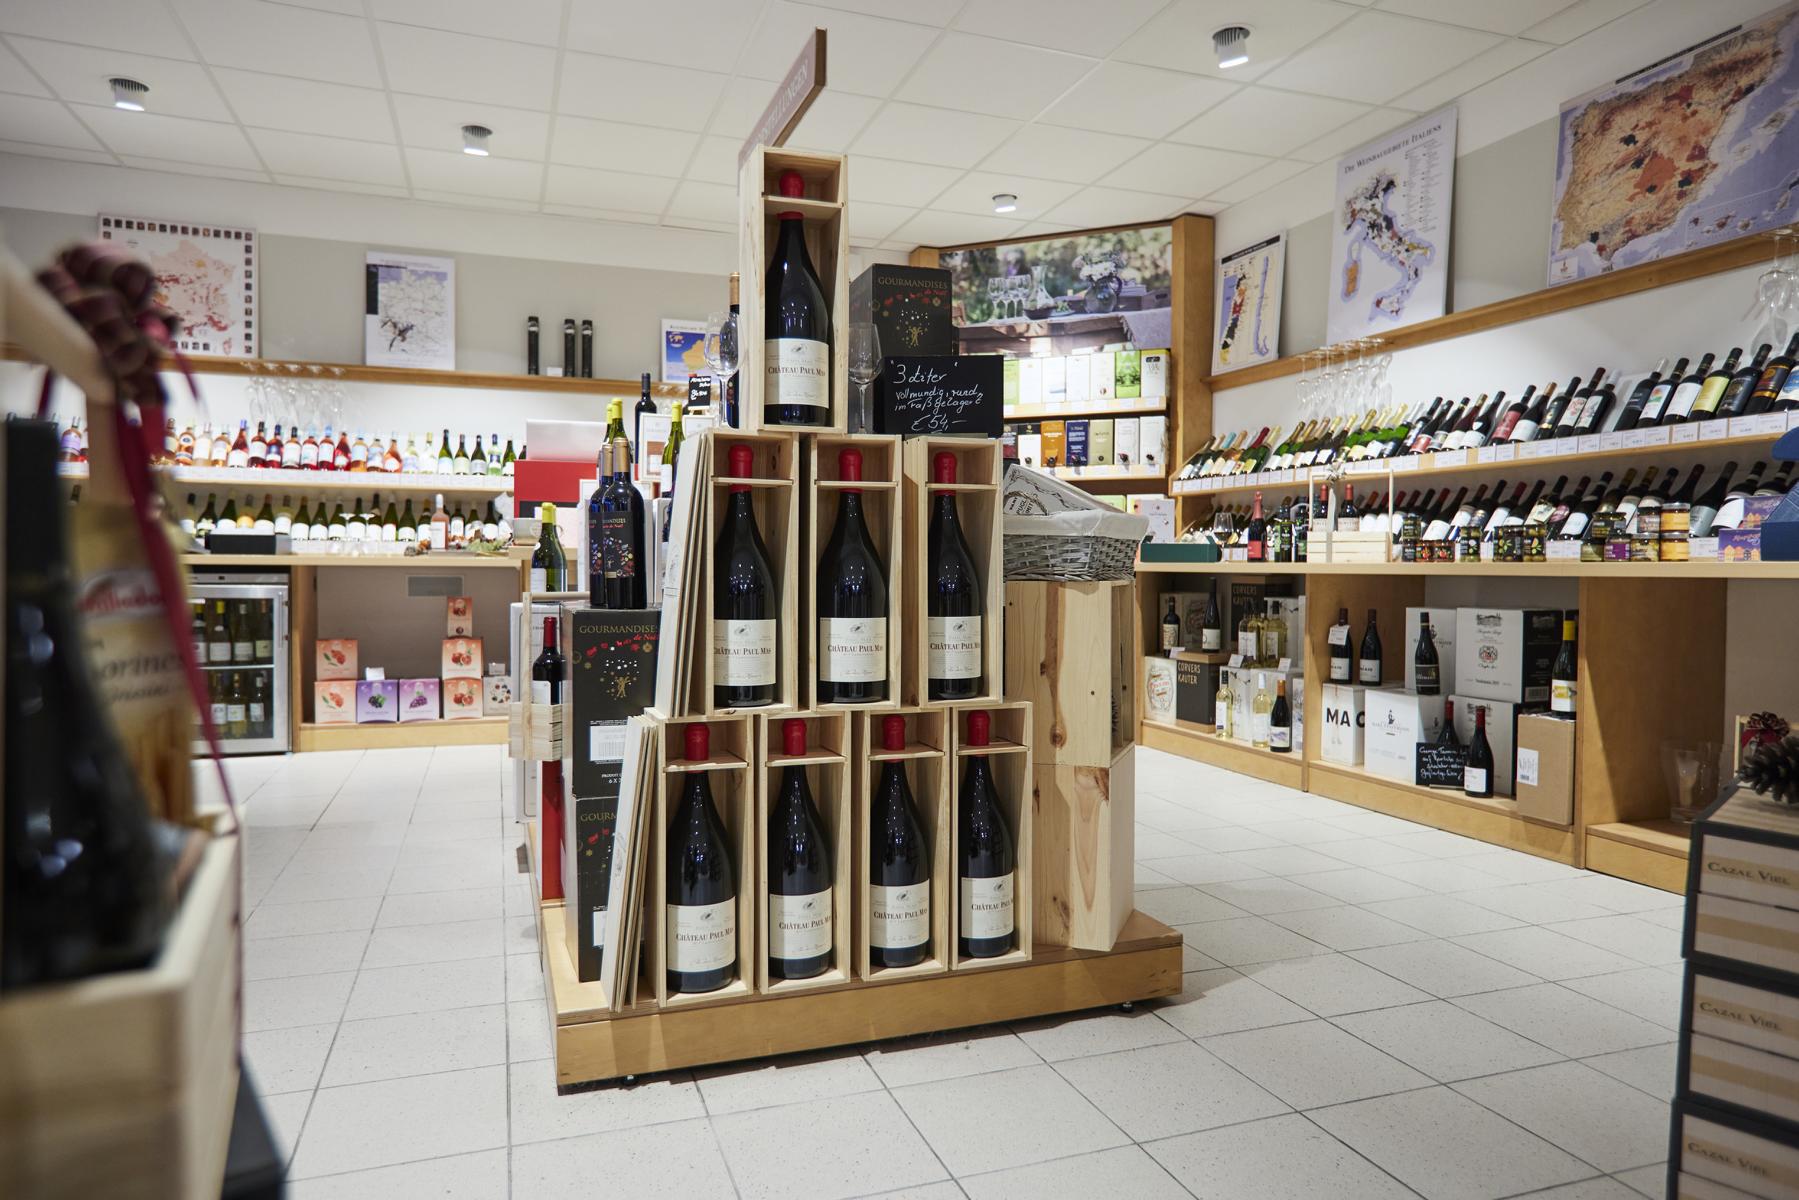 Bilder Jacques’ Wein-Depot Bad Vilbel